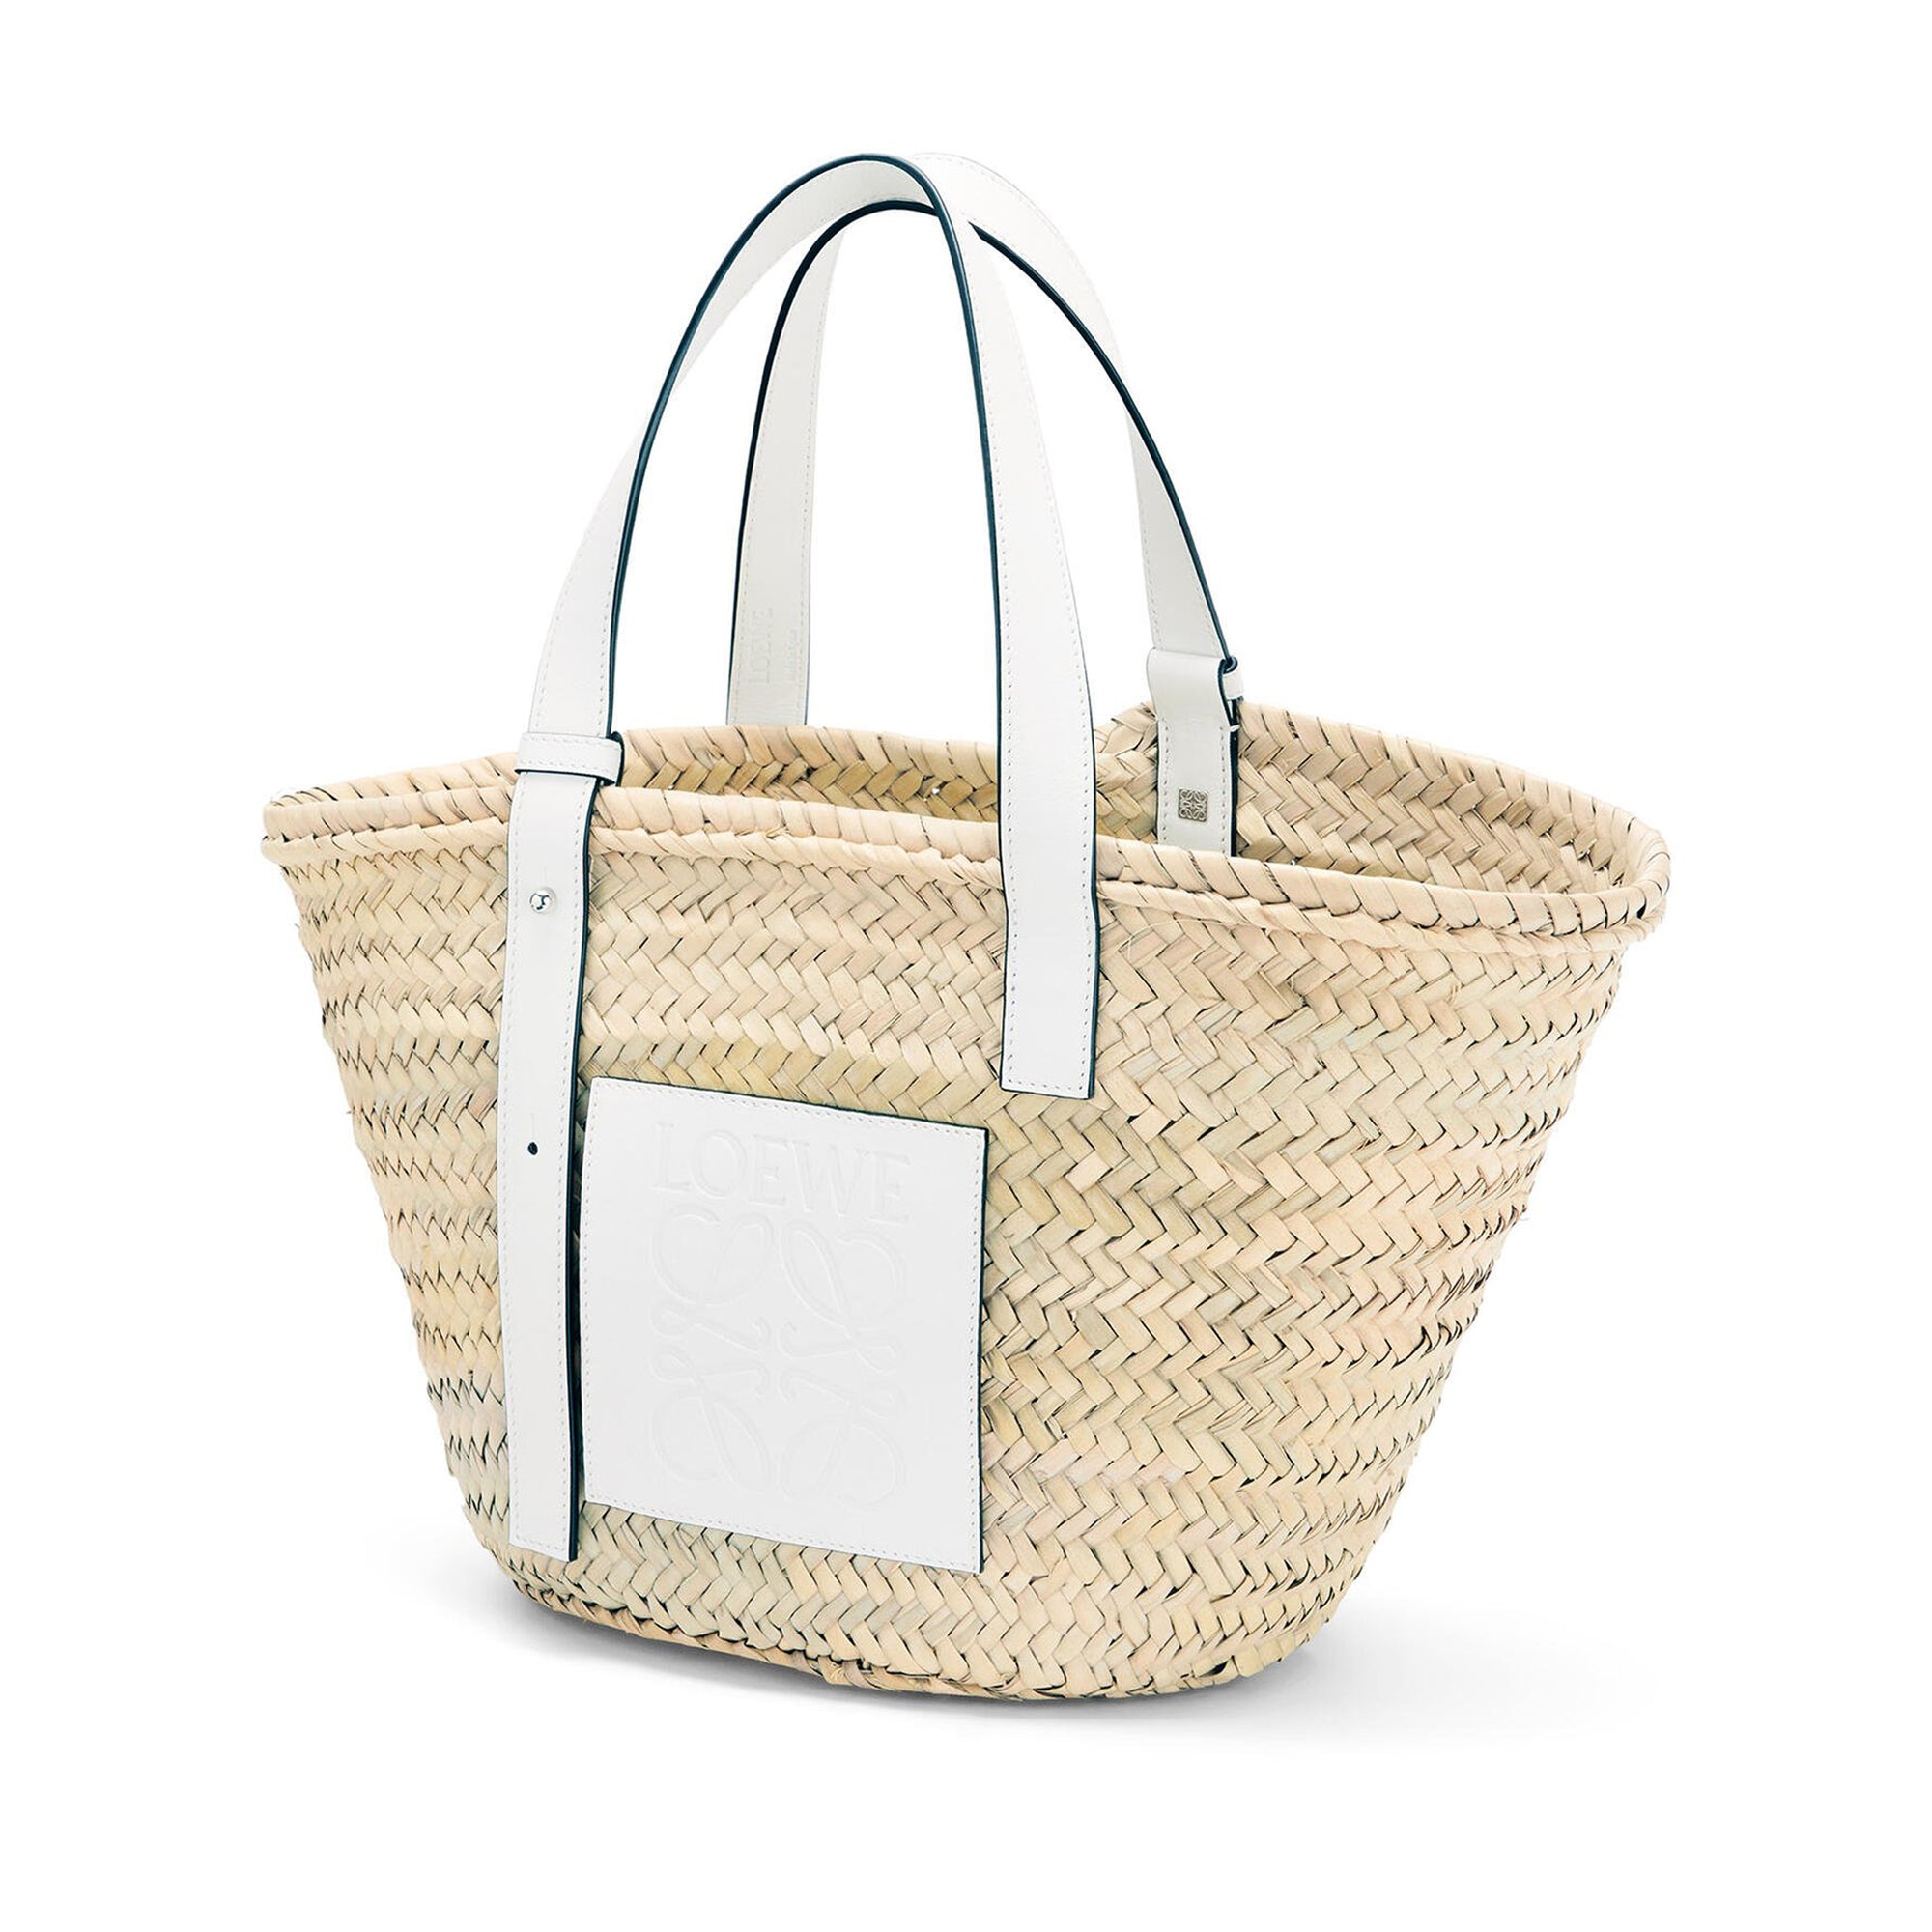 Loewe - Women’s Basket Bag - (Natural/White) view 3